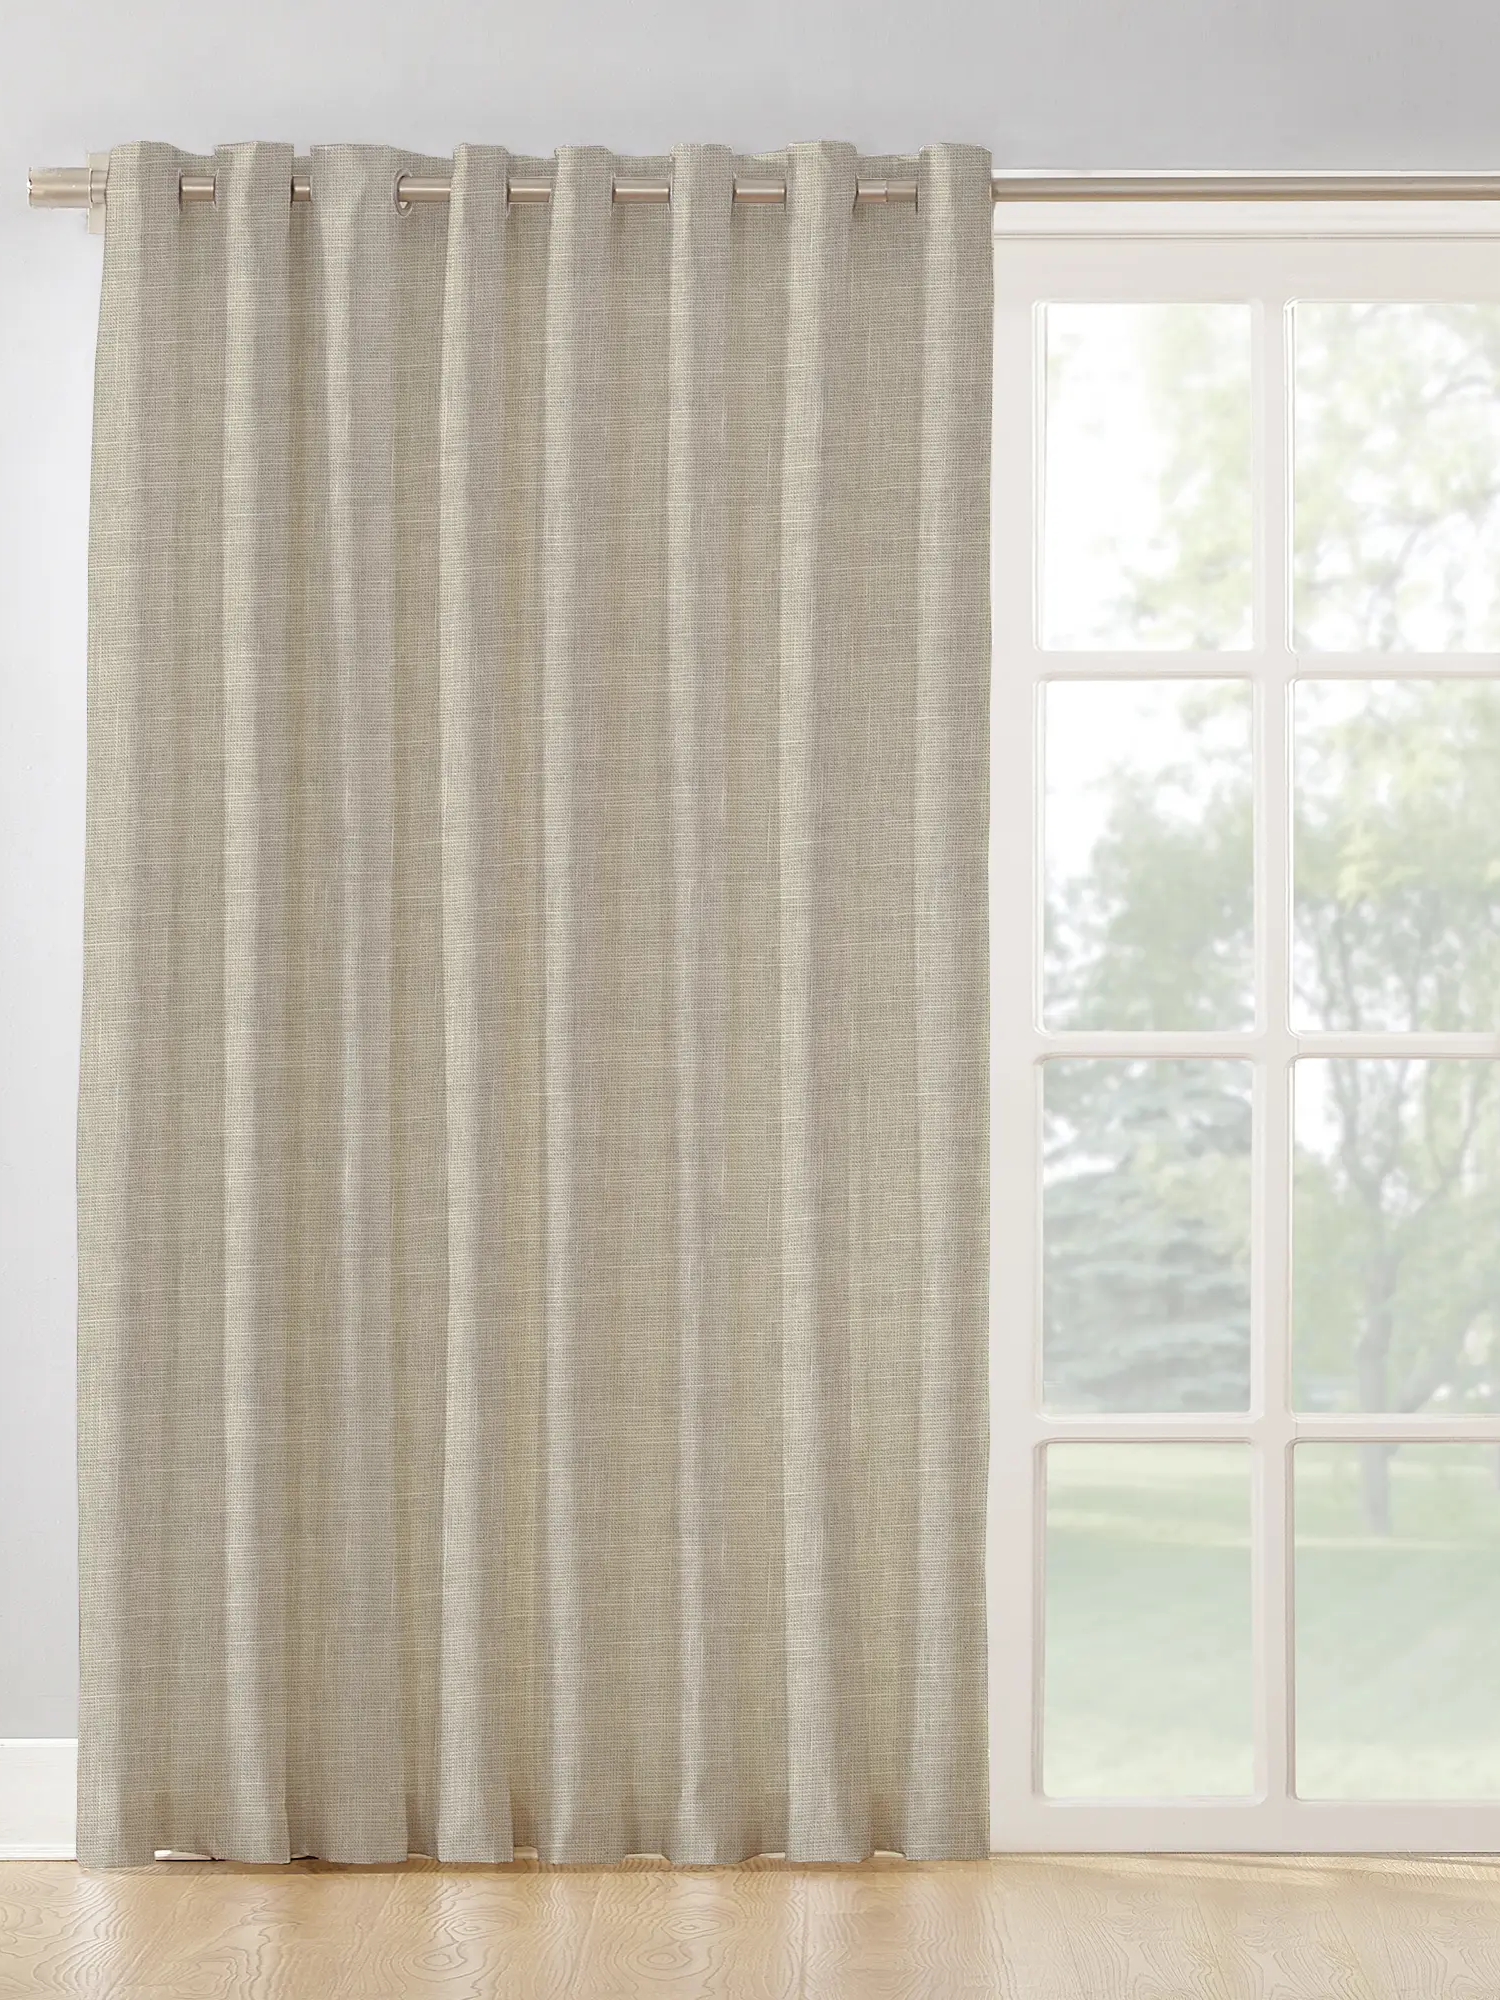 Visillos y cortinas para tus descubre su poder decorativo | Leroy